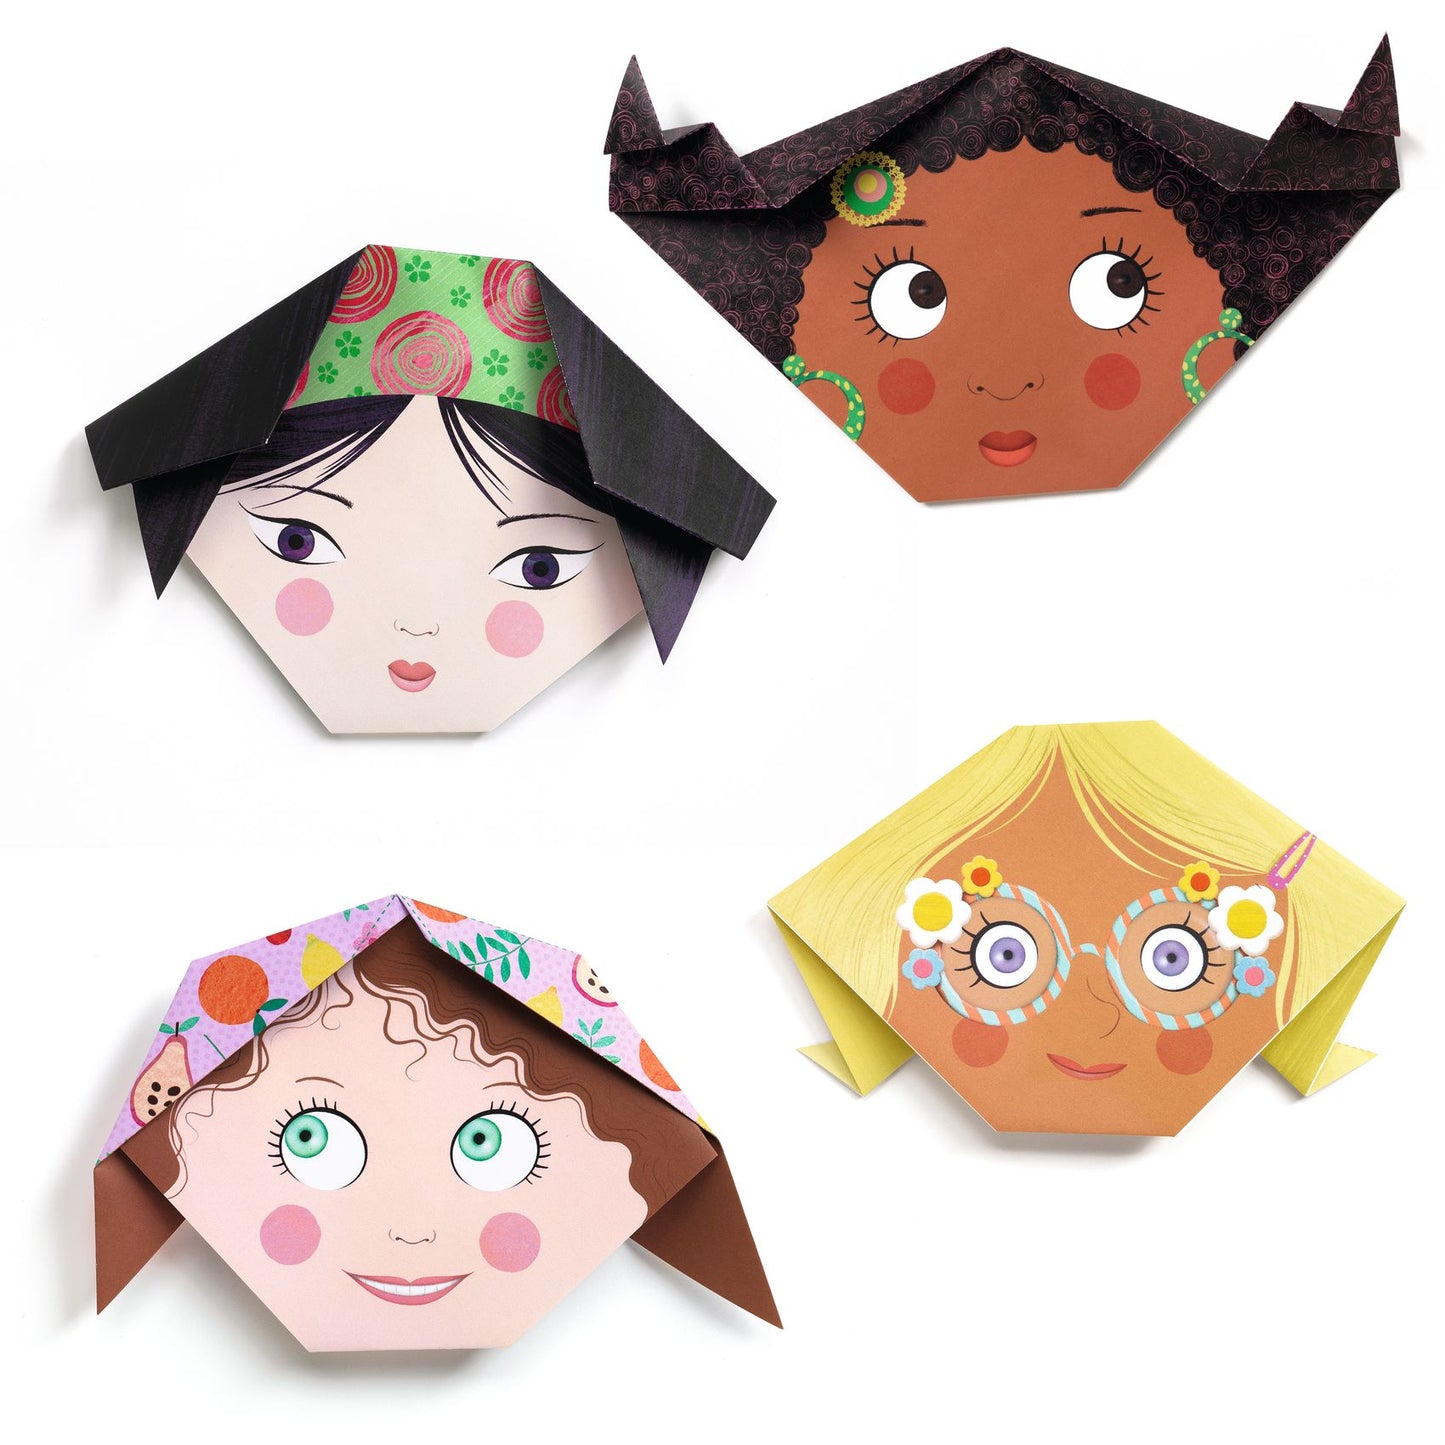 Origami - Pretty faces